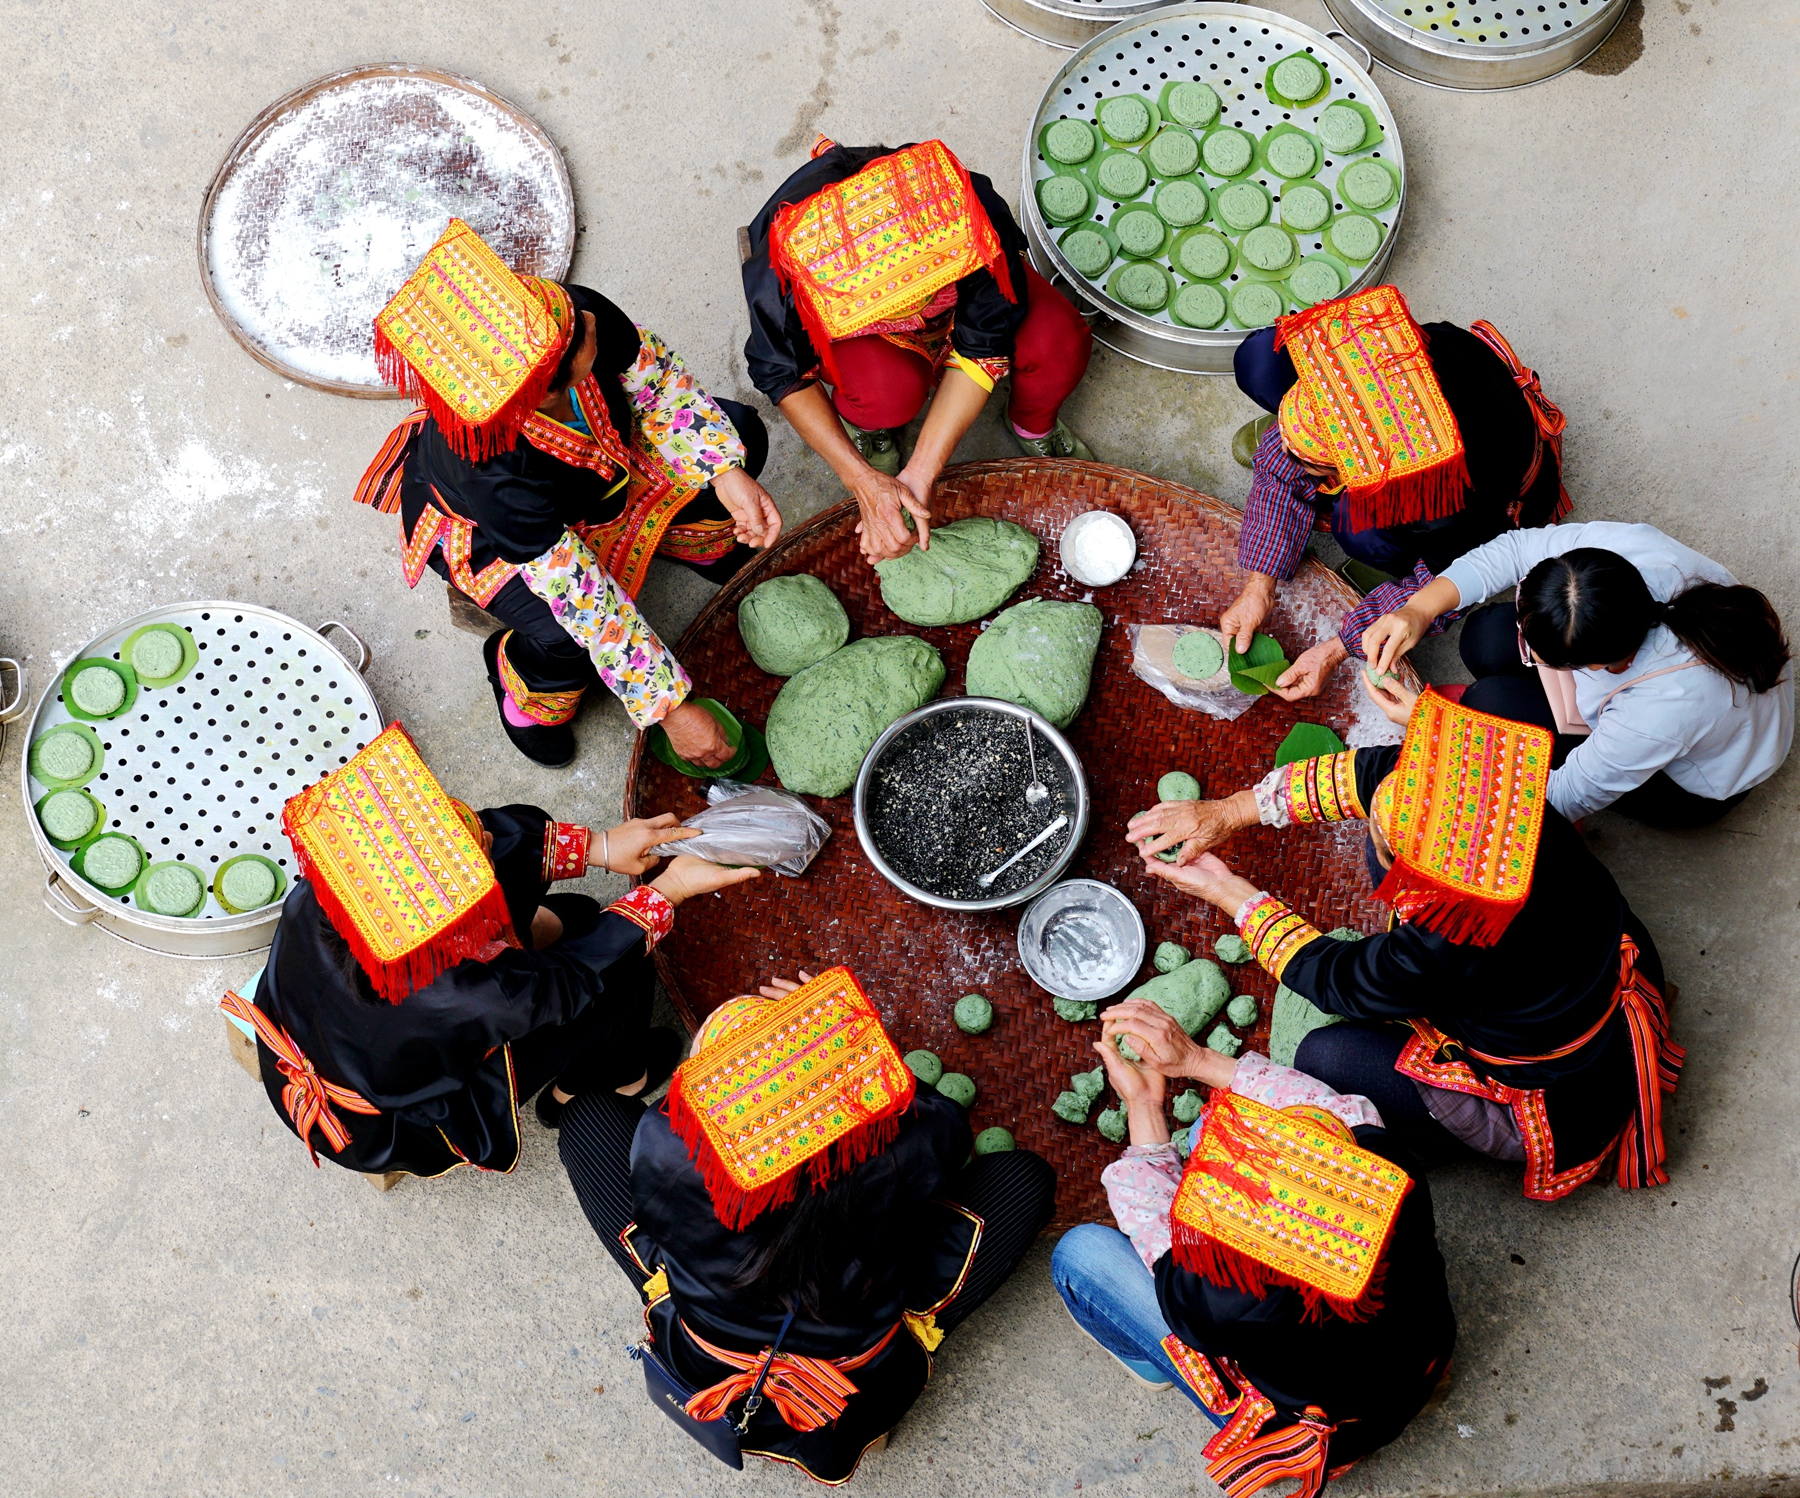 hk_c_幸福生活 廣西蒙山瑤族鄉，瑤胞聚在一起製作傳統美食糍粑。 陳勝強.jpg